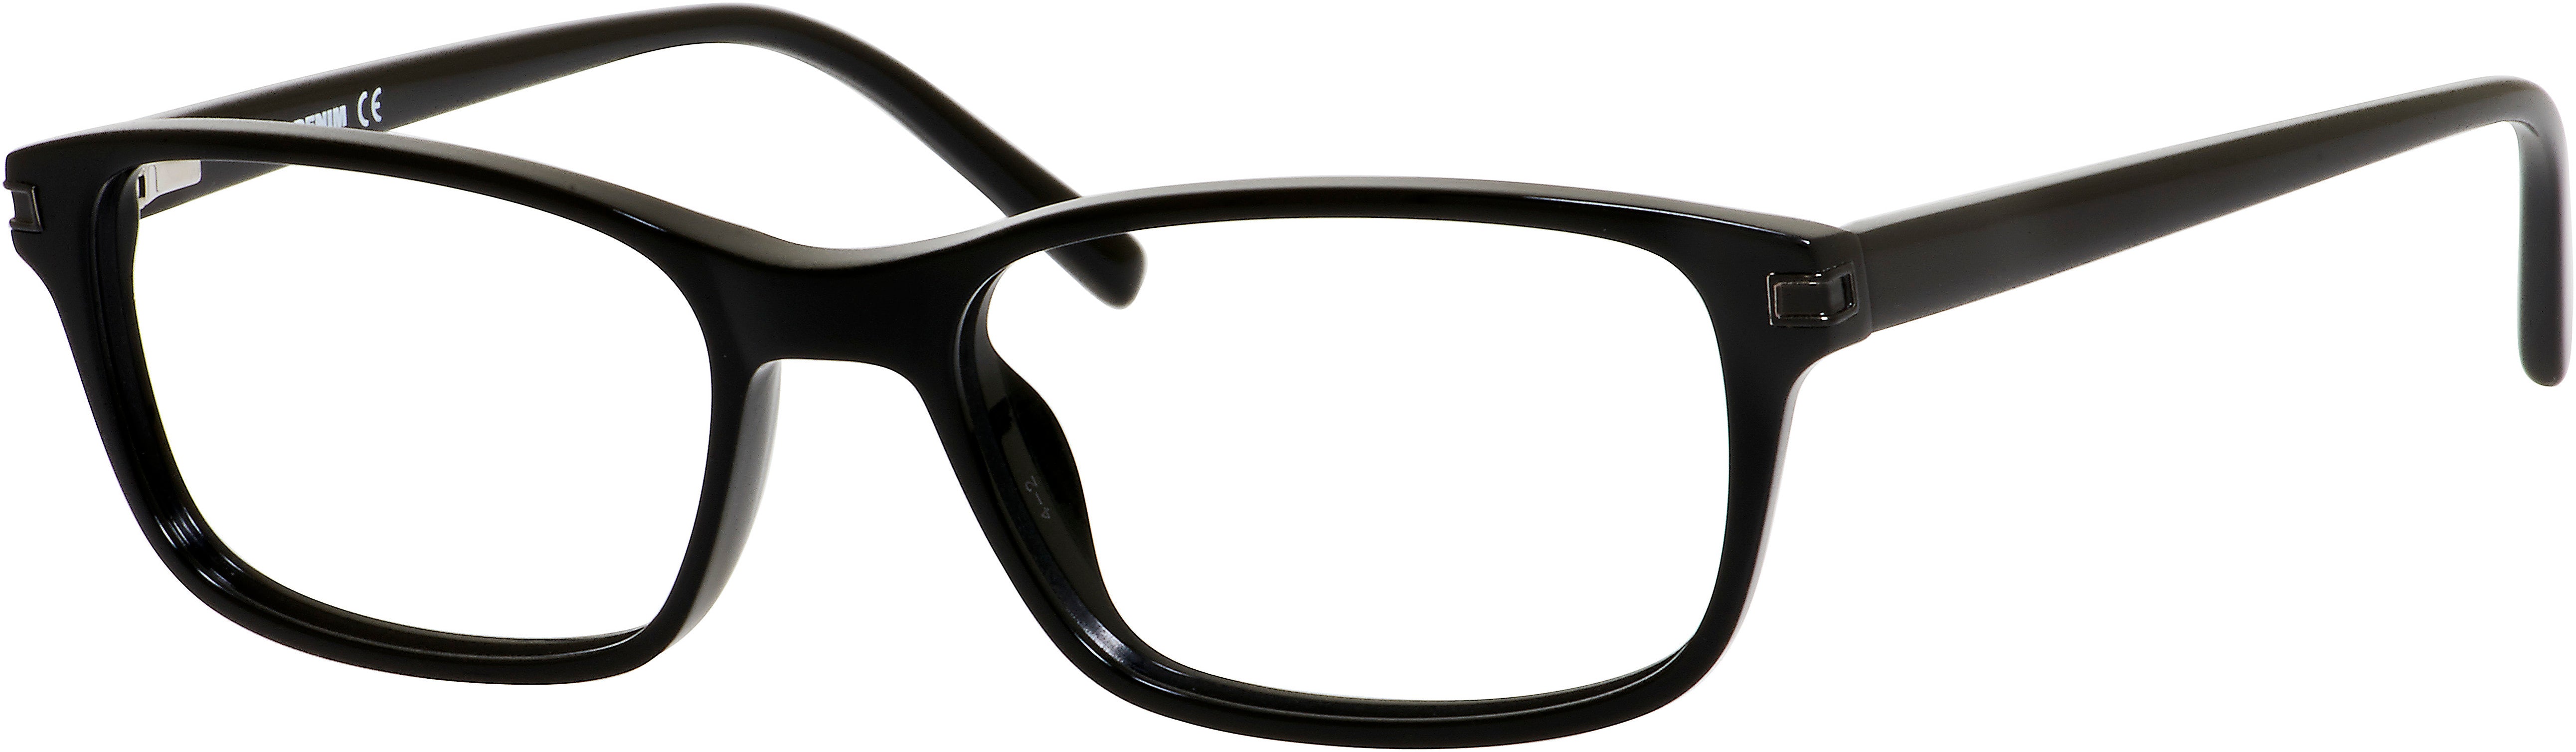  Denim 165 Rectangular Eyeglasses 0807-0807  Black (00 Demo Lens)